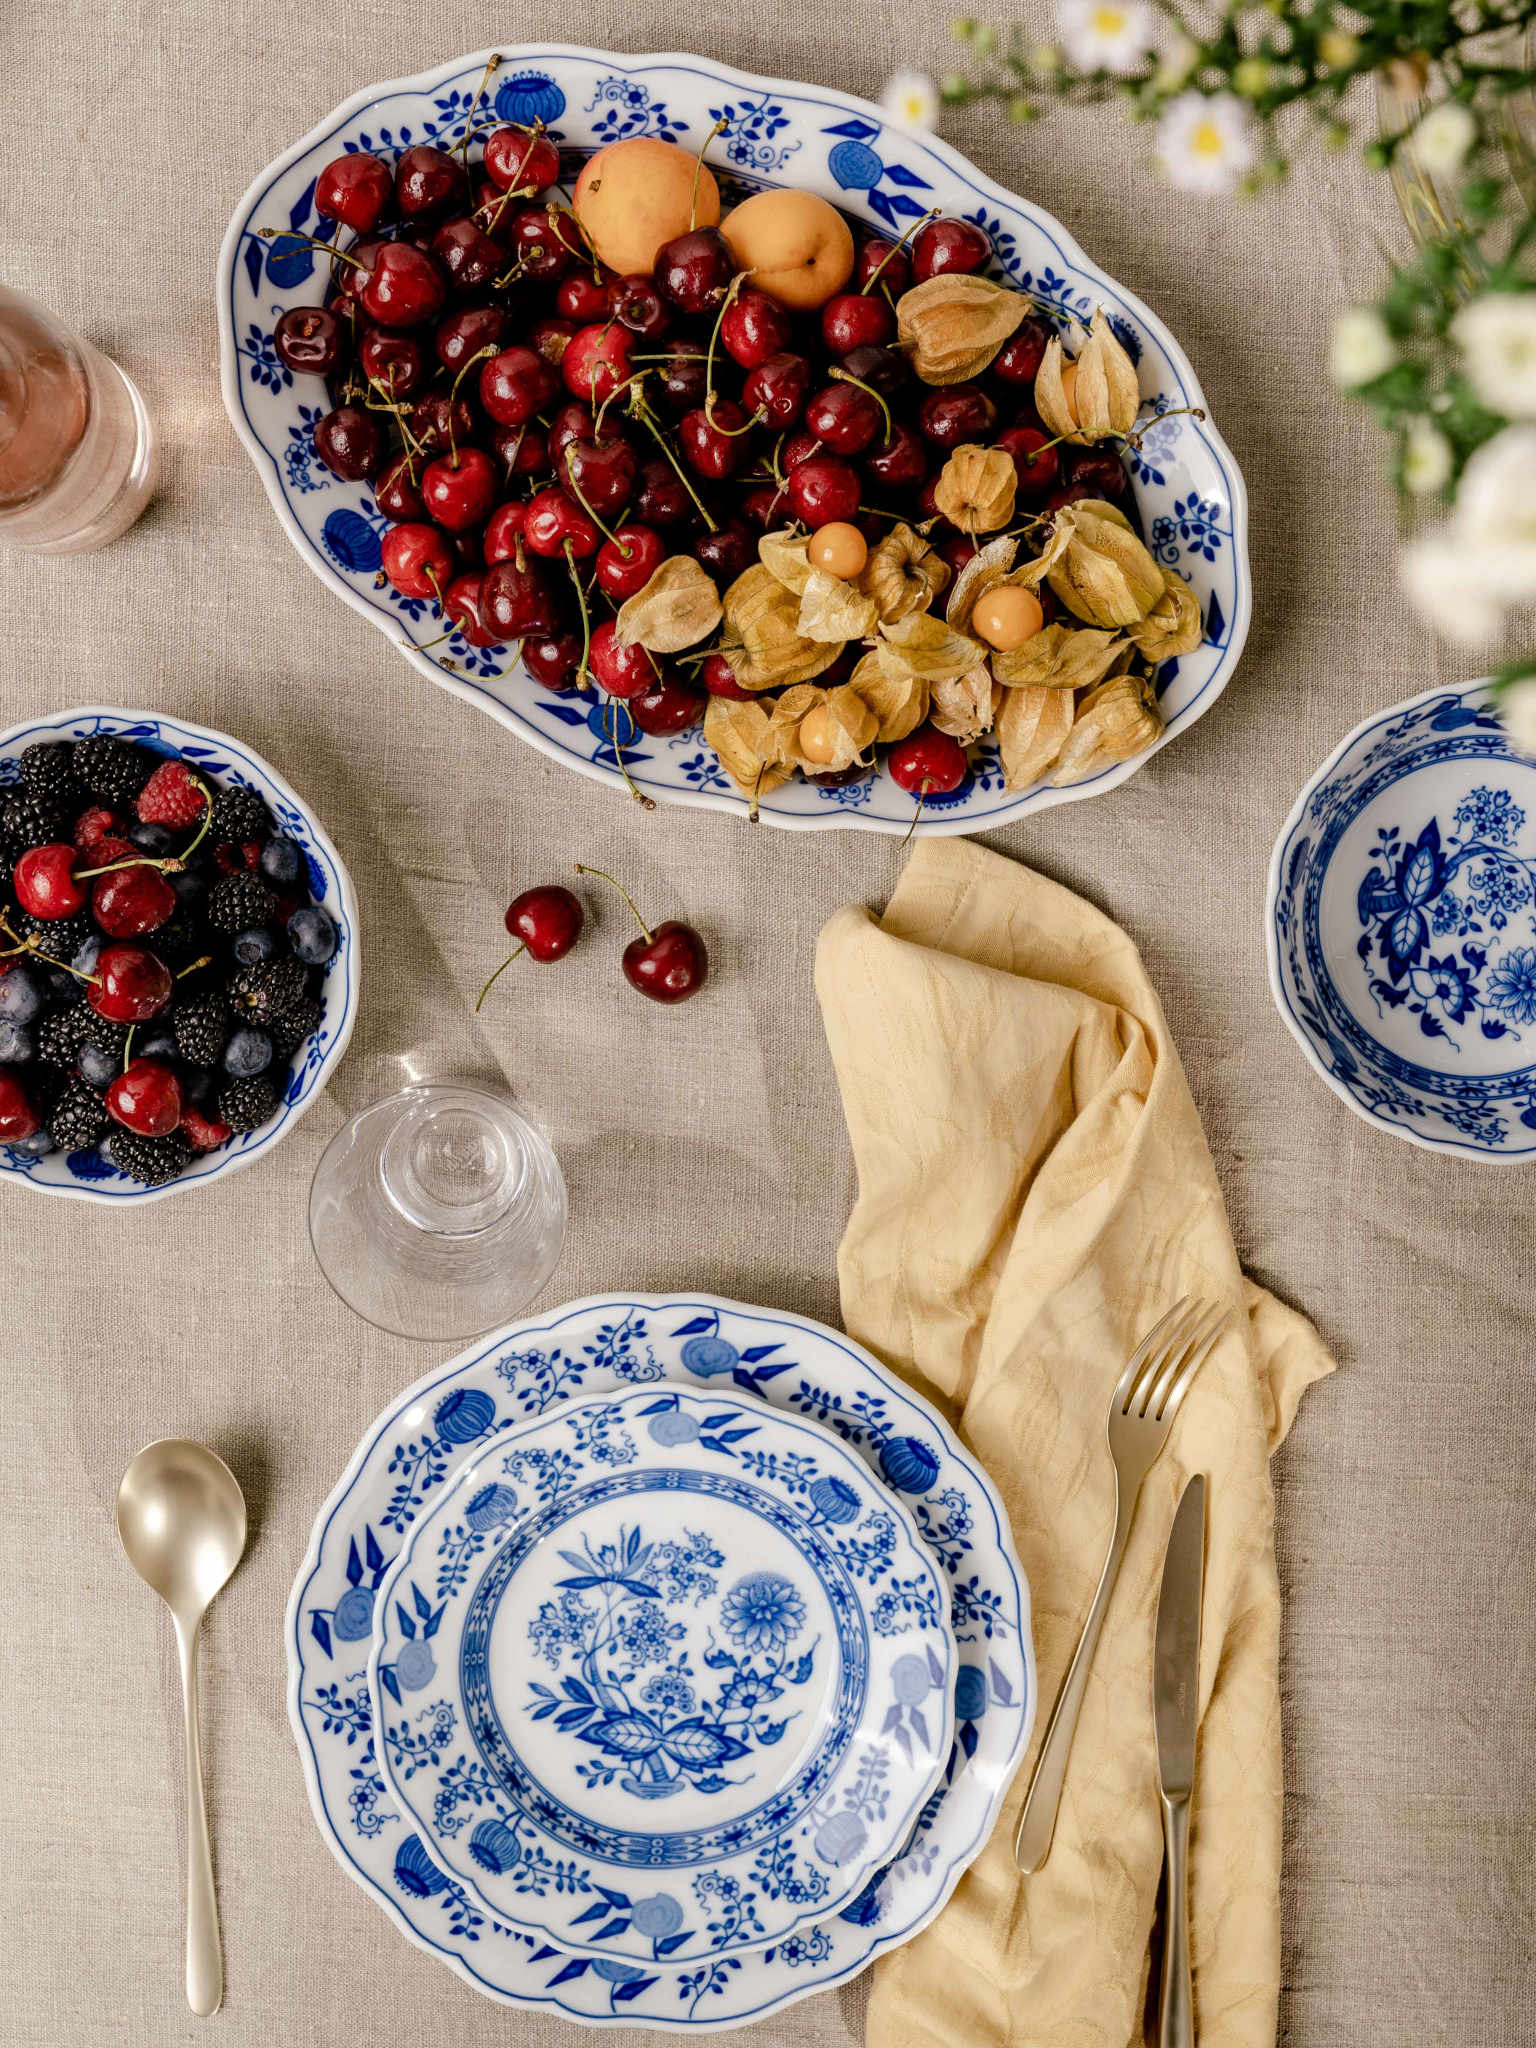 Hutschenreuther Blau Zwiebelmuster Platte voller Kirschen, darunter Teller mit goldenem Besteck